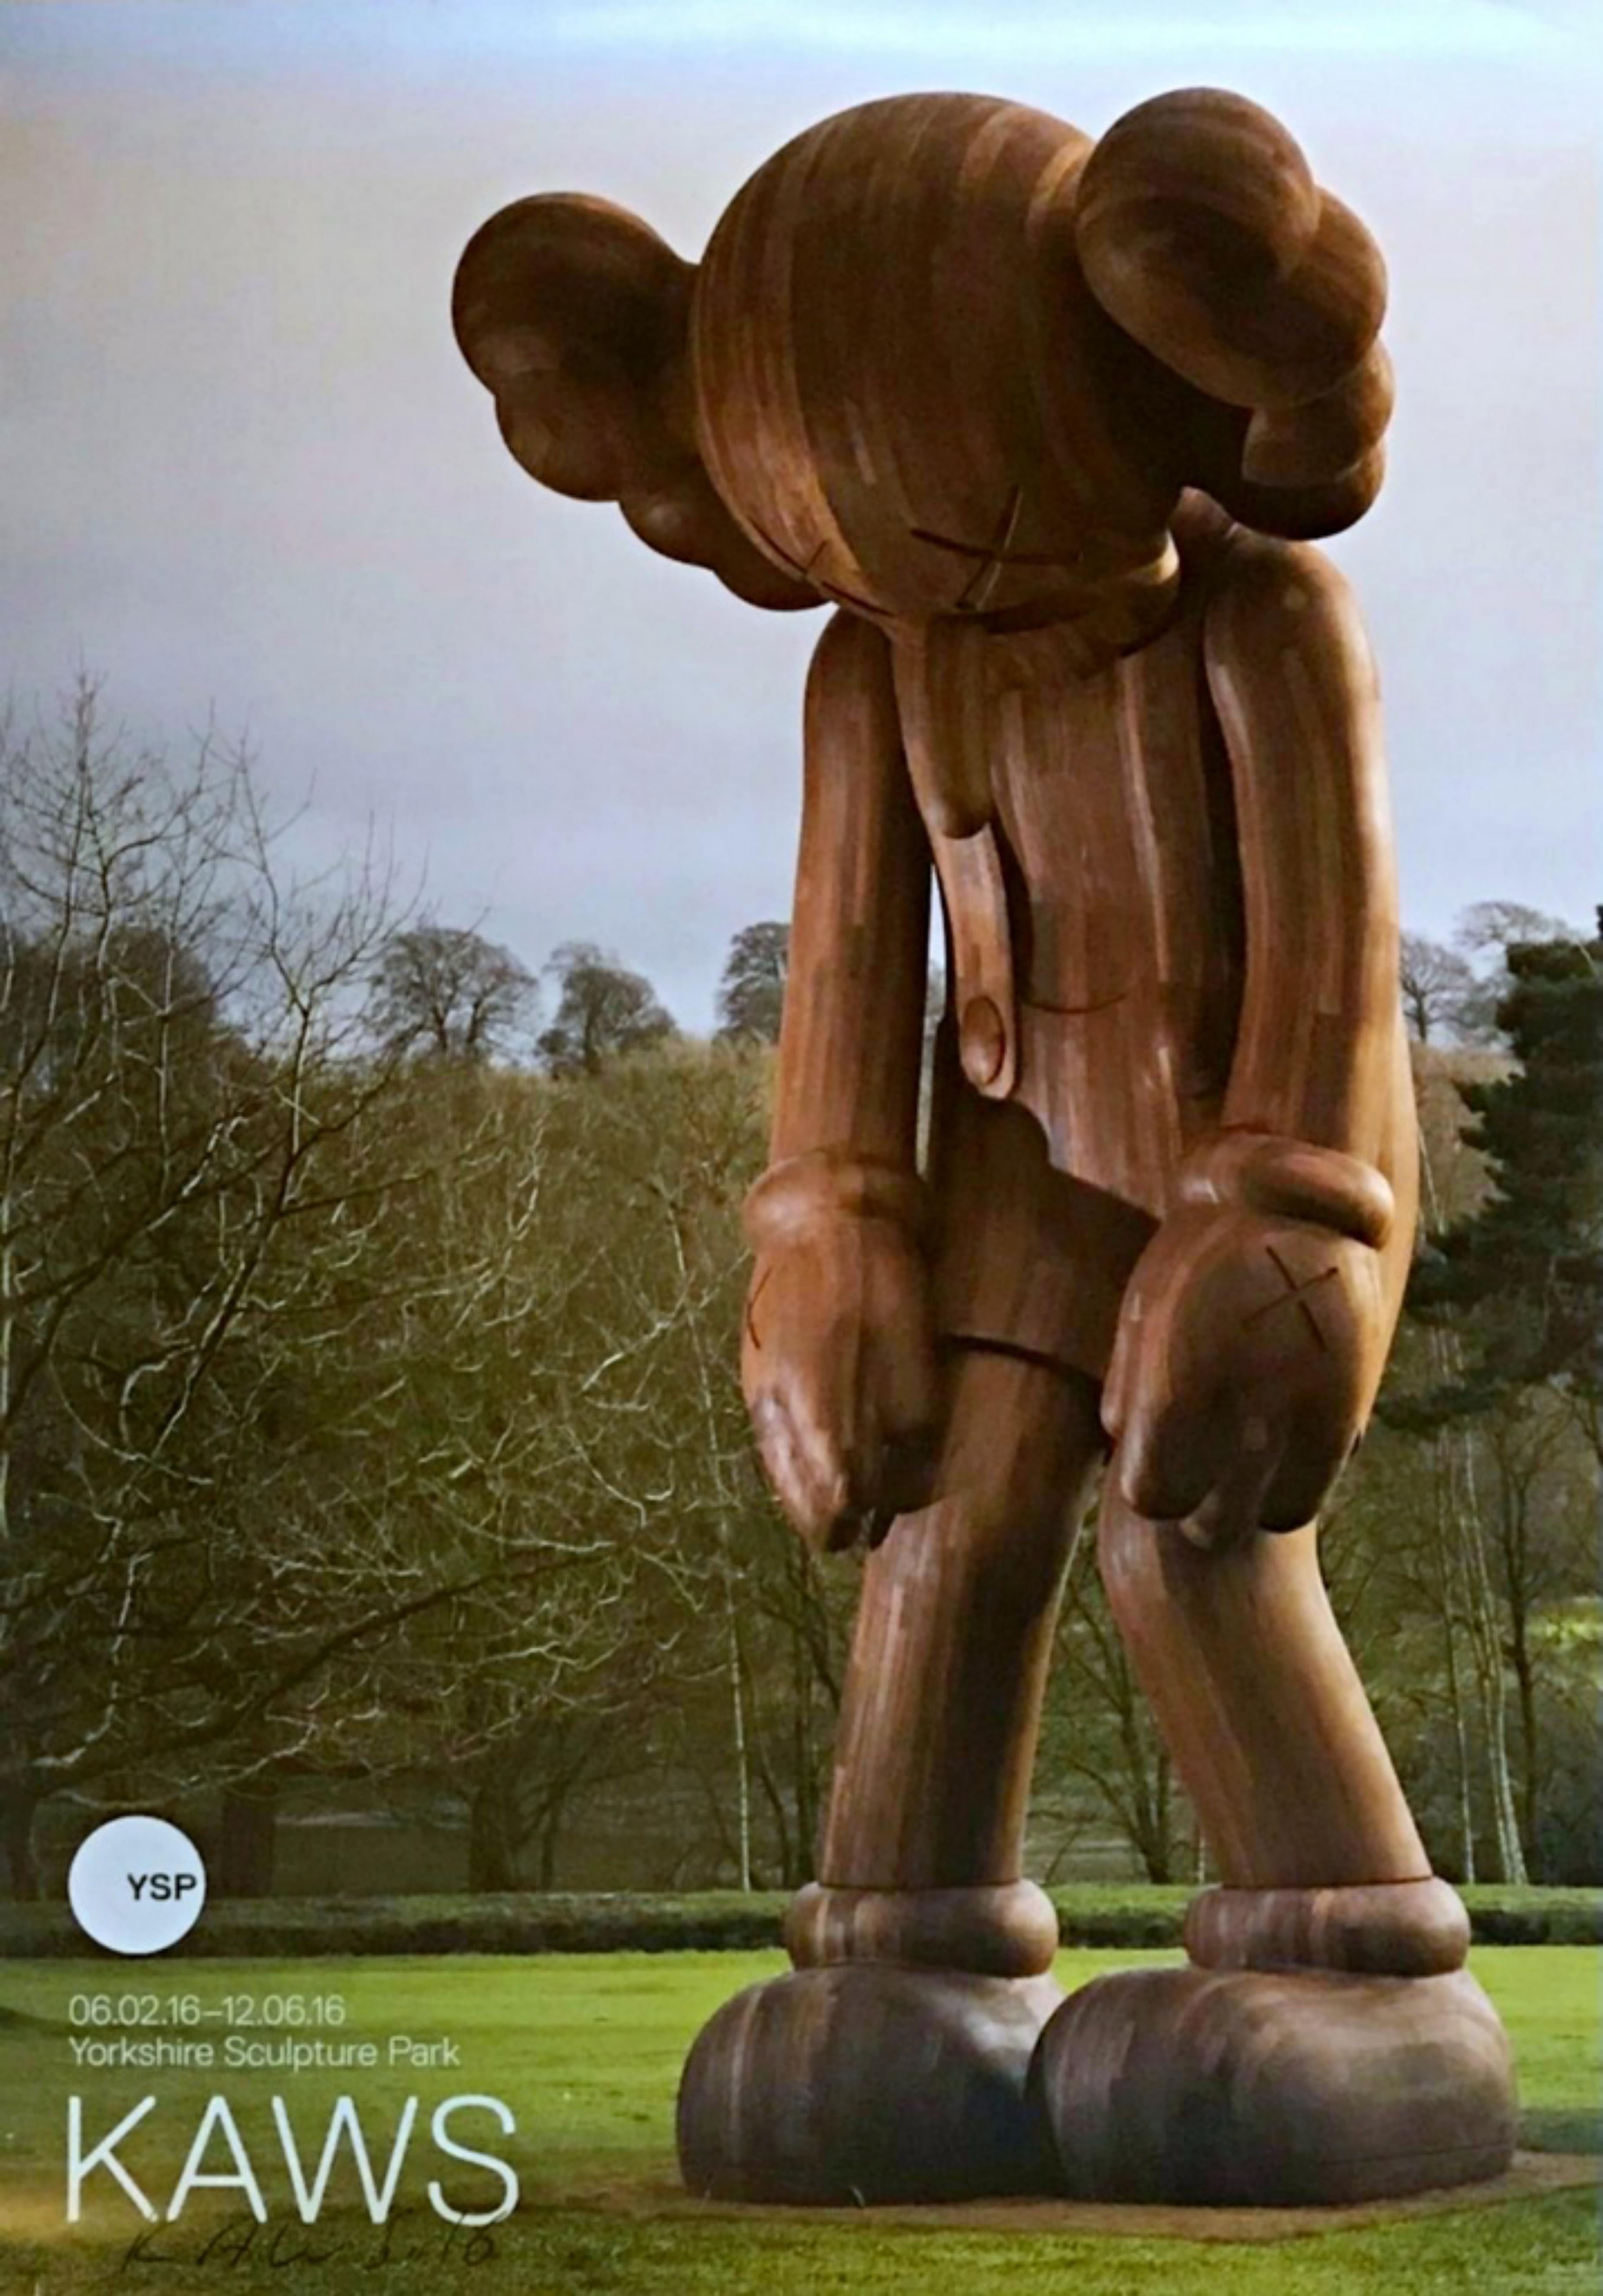 KAWS
KAWS im Yorkshire Sculpture Park (handsigniert), 2016
Offsetlithografie-Poster, einmalig signiert und datiert von KAWS
33 × 24 Zoll
Signiert und datiert auf der unteren Vorderseite
Ungerahmt
Handsigniert von KAWS im Yorkshire Sculpture Park in